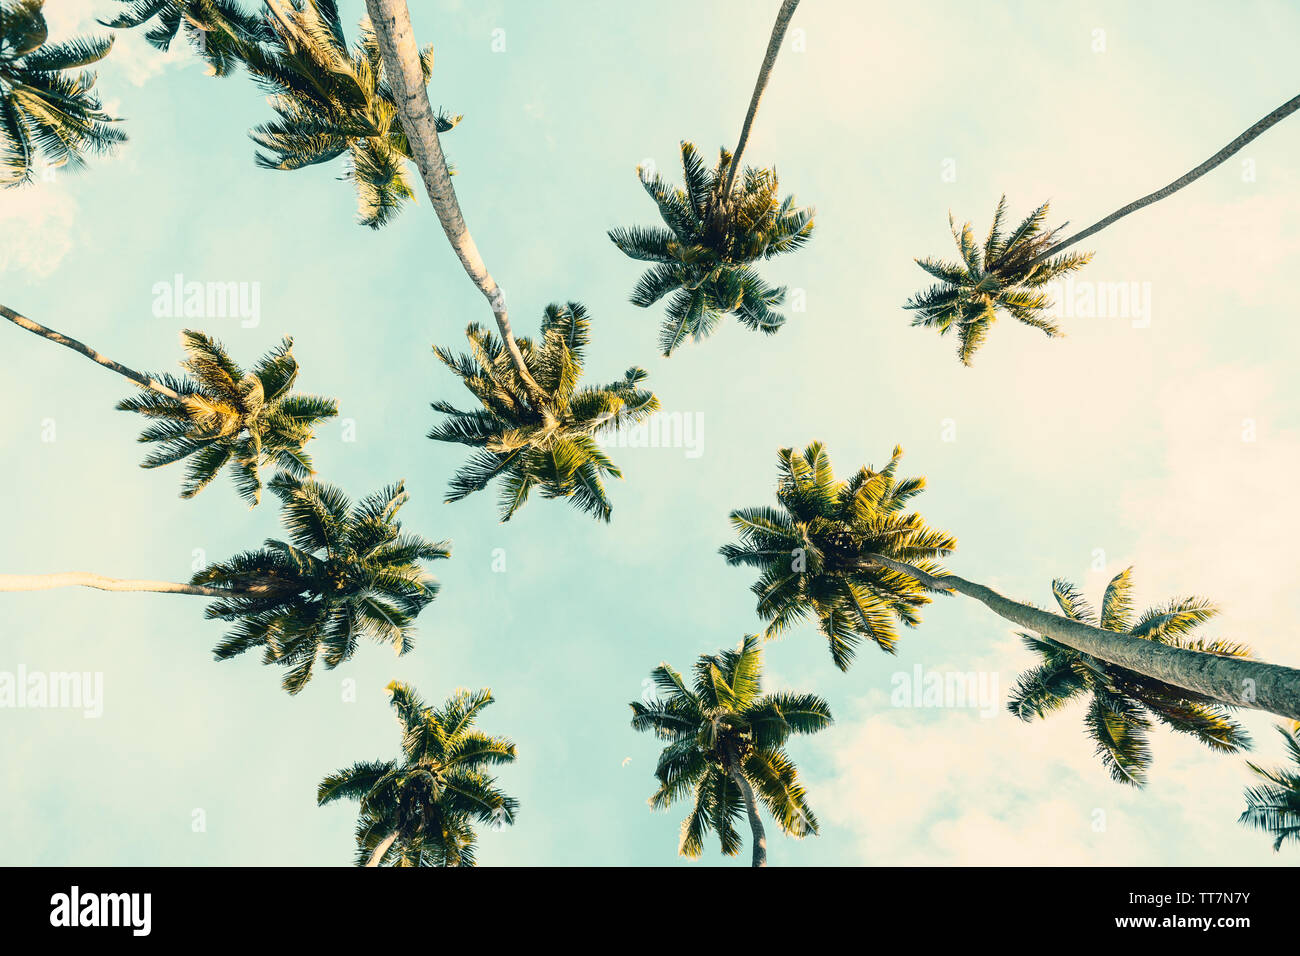 Sommer tropischen Hintergrund mit Kokosnuss Palmen am blauen Himmel. Getönten Bild. Stockfoto